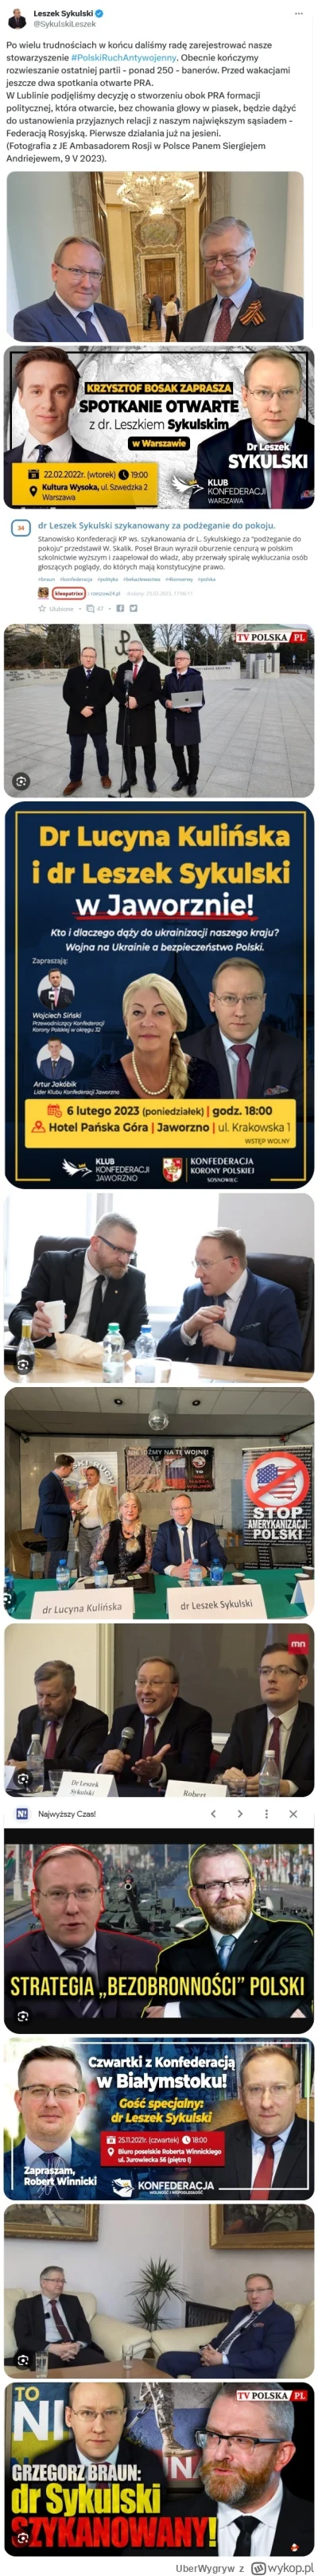 UberWygryw - W Polsce dziala legalnie ruska agentura wplywu.